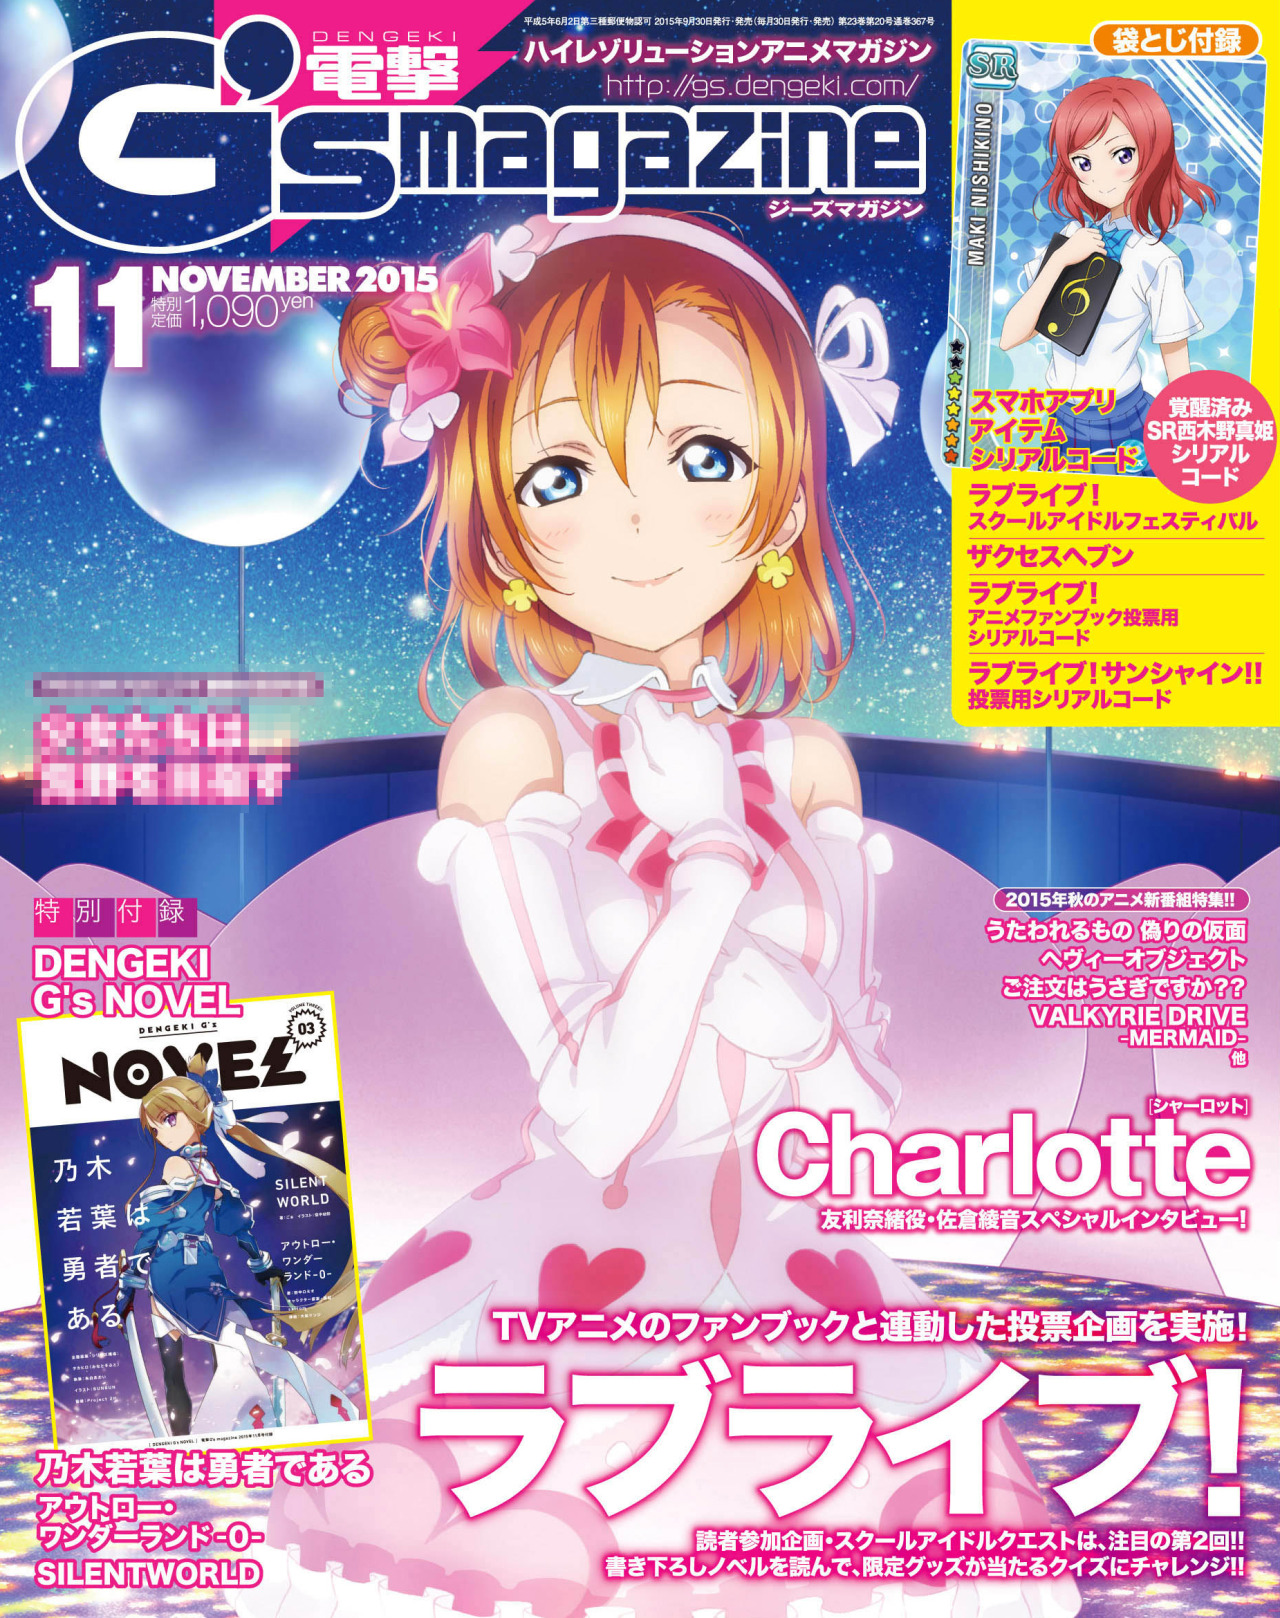 minato2525:
“『ラブライブ！』が表紙の電撃G’sマガジン11月号の表紙を先行公開です♪ | 電撃G’s magazine.com
”